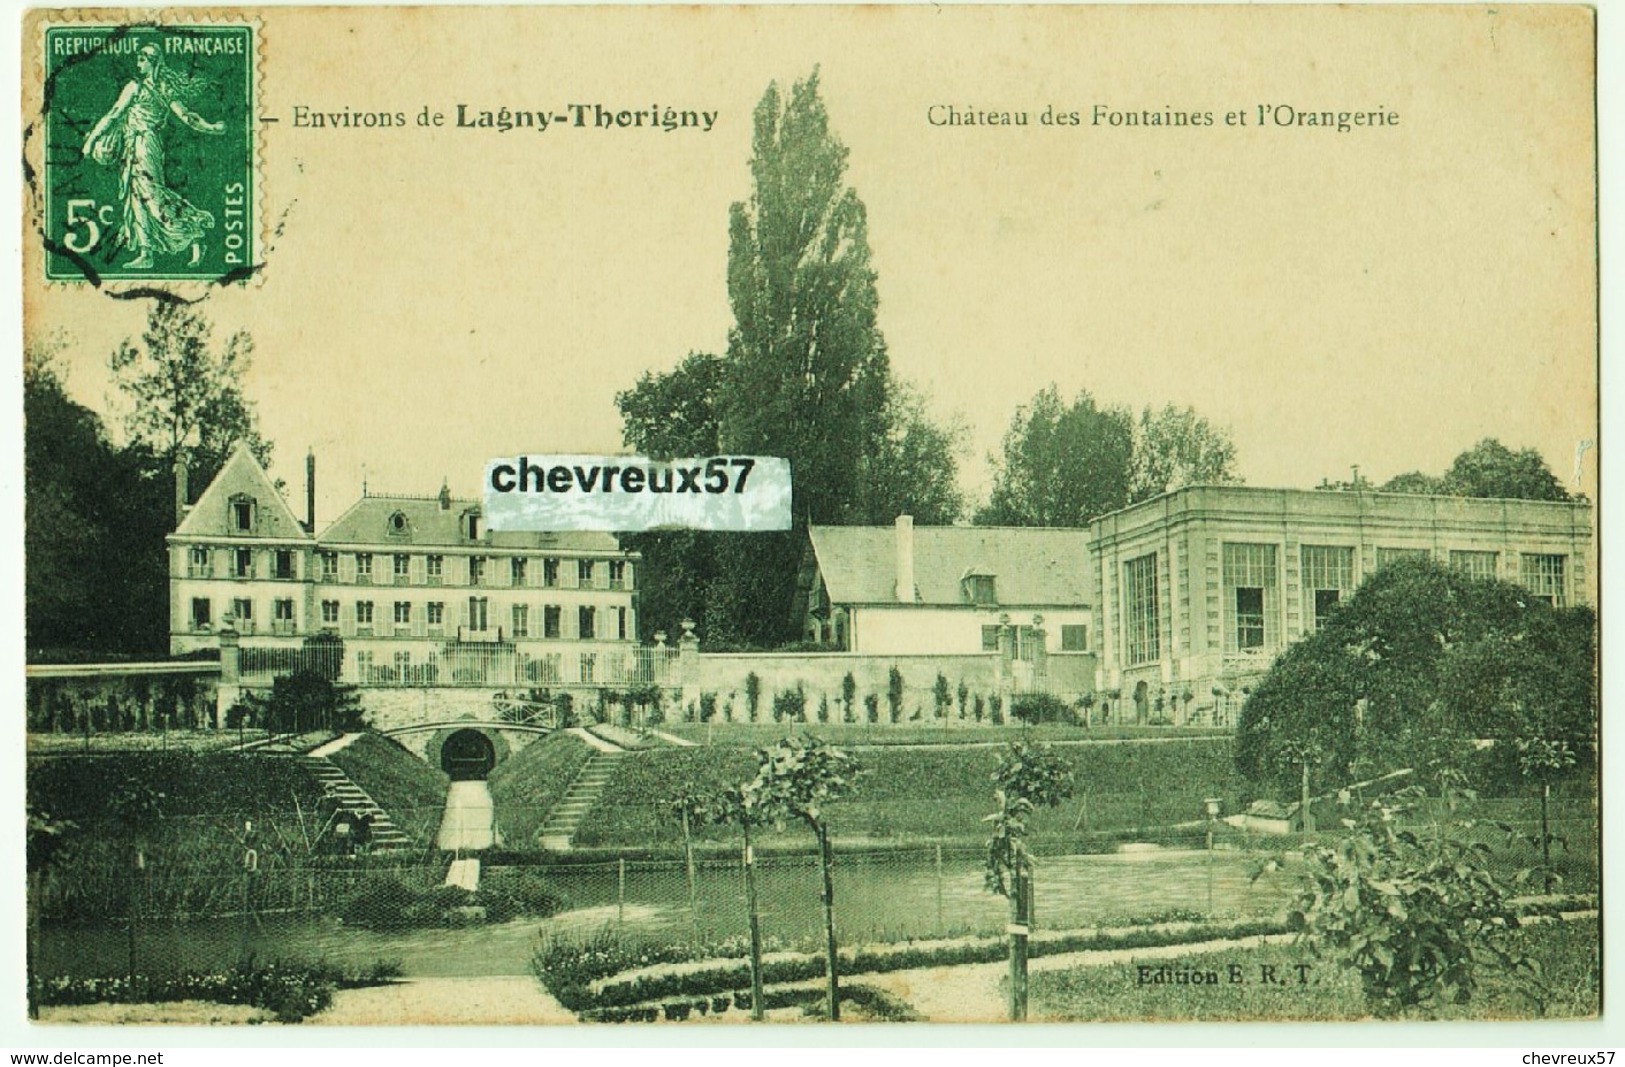 61 - VILLES ET VILLAGES DE FRANCE - 32 cartes anciennes dont 12 cpa Lagny-Thorigny,10 cpa Verdun avant 1914